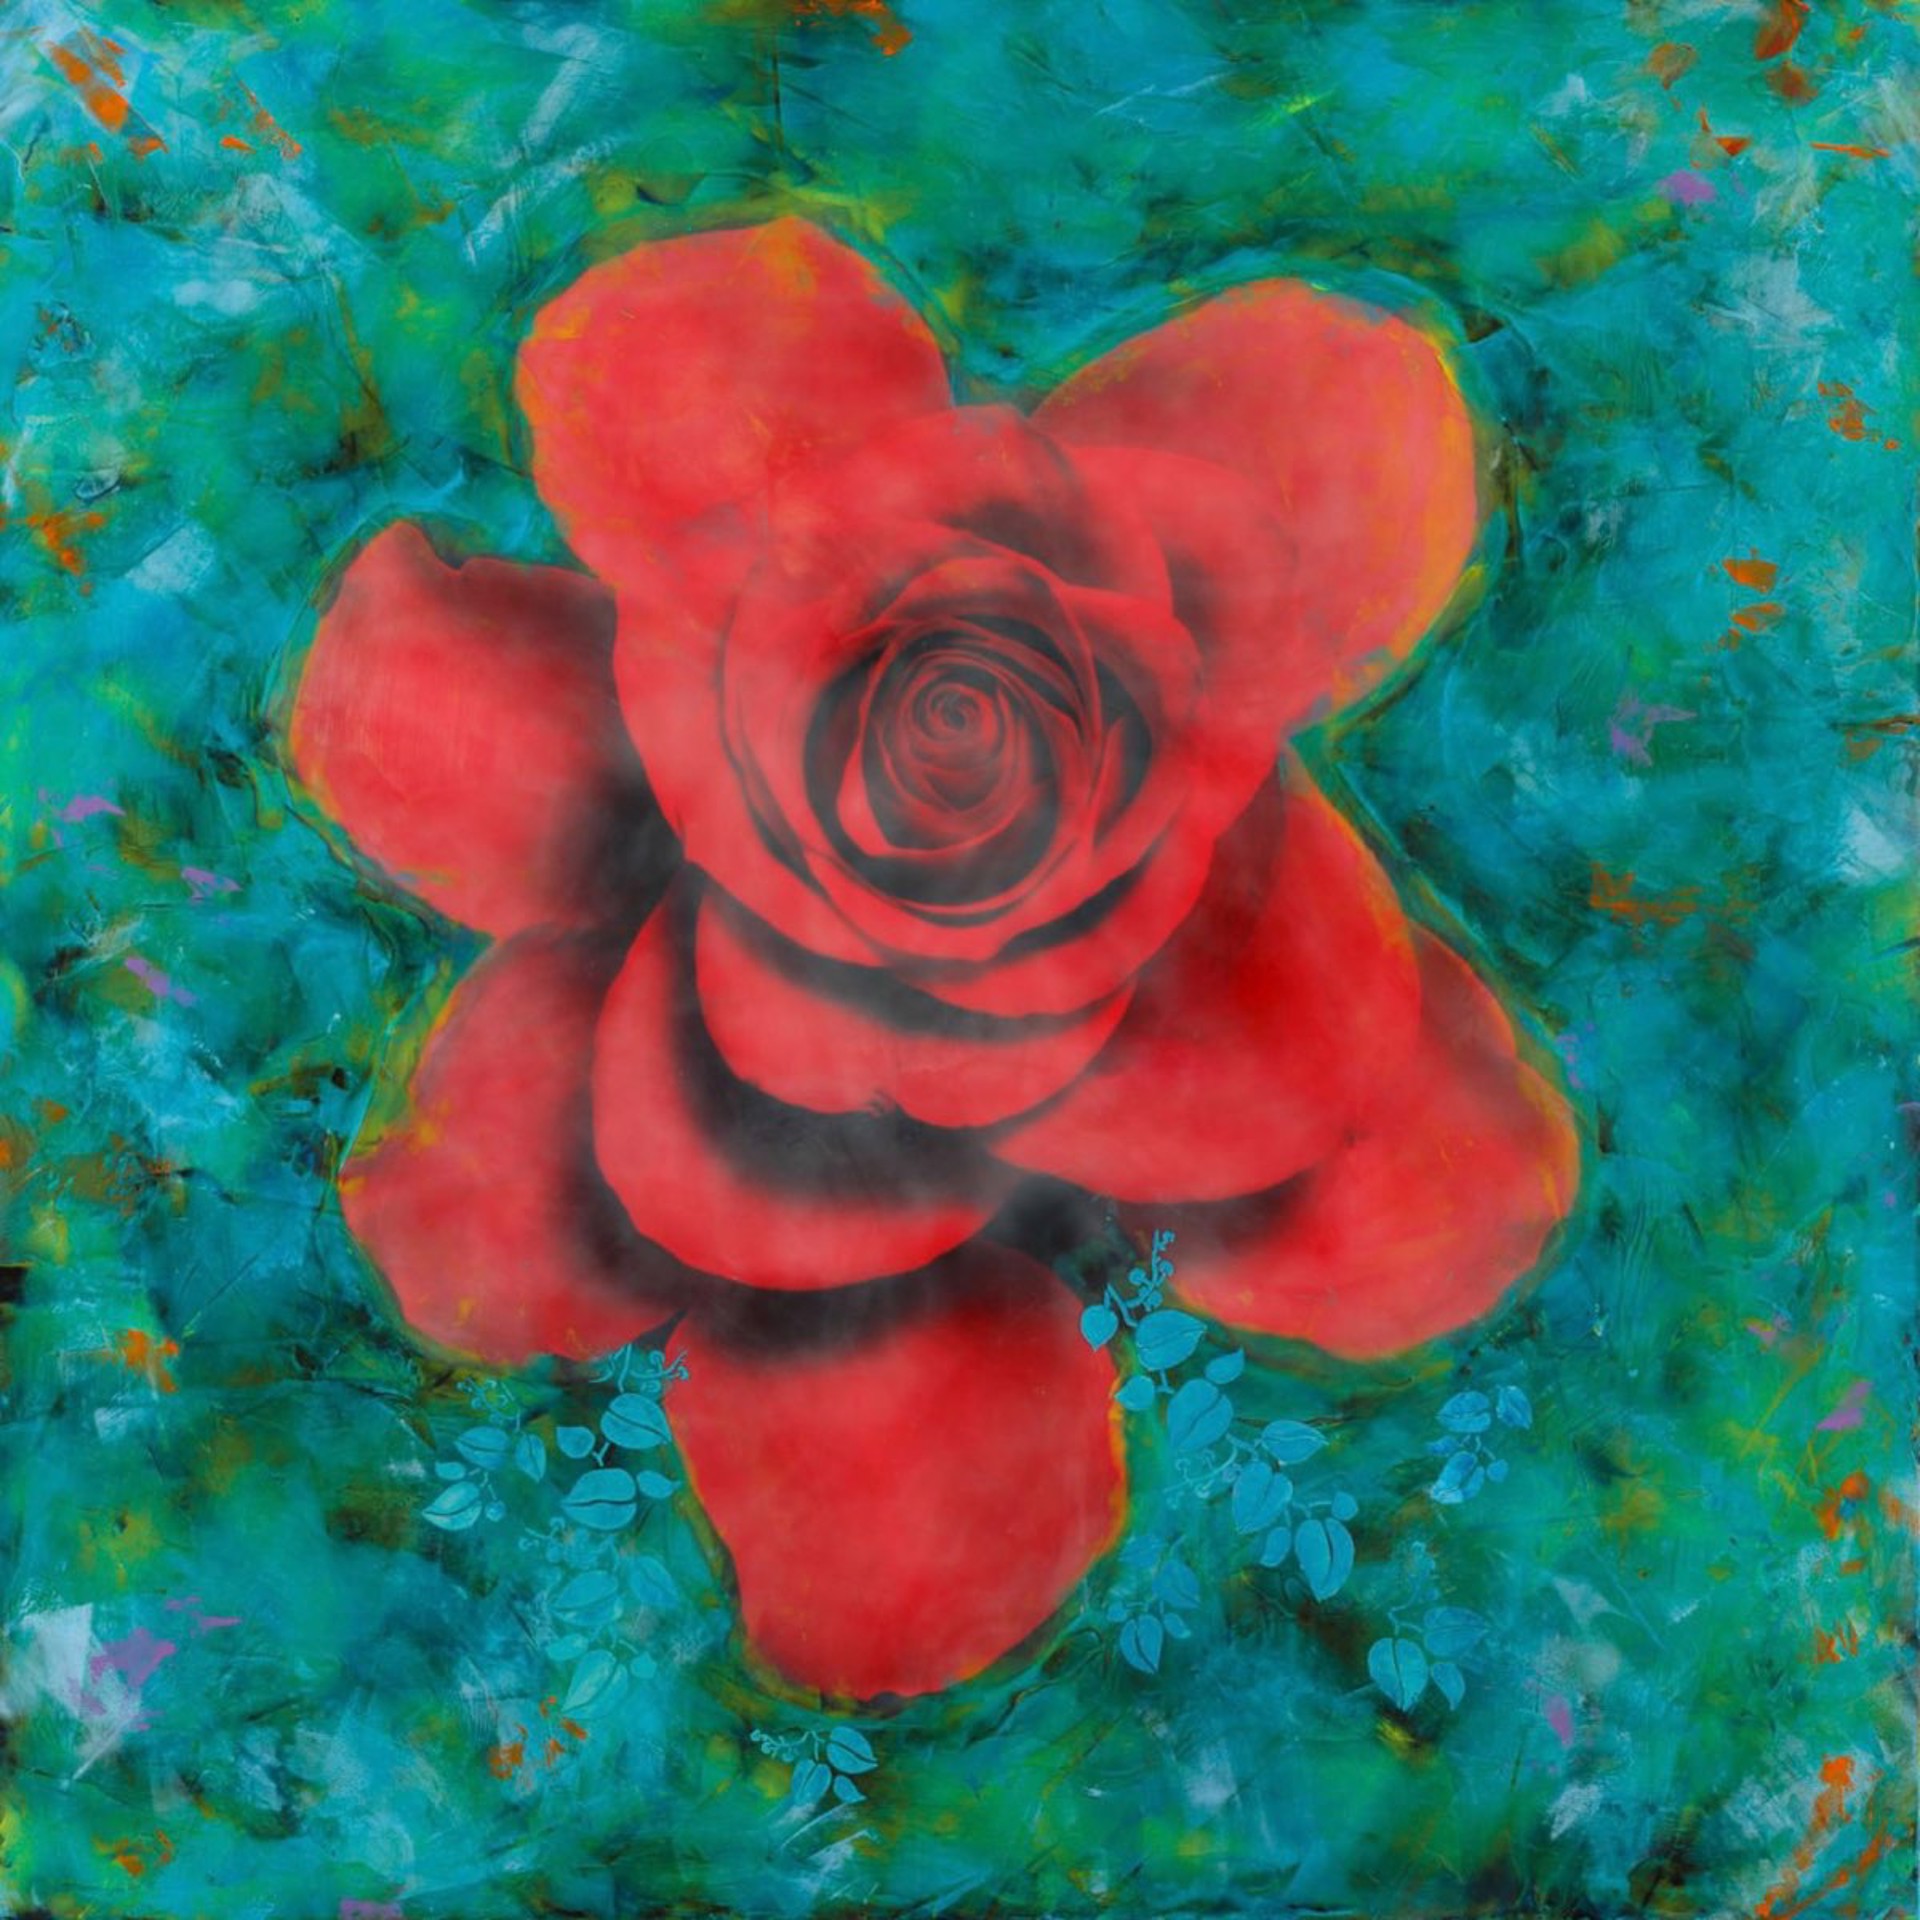 Vida Rose by Deborah Llewellyn